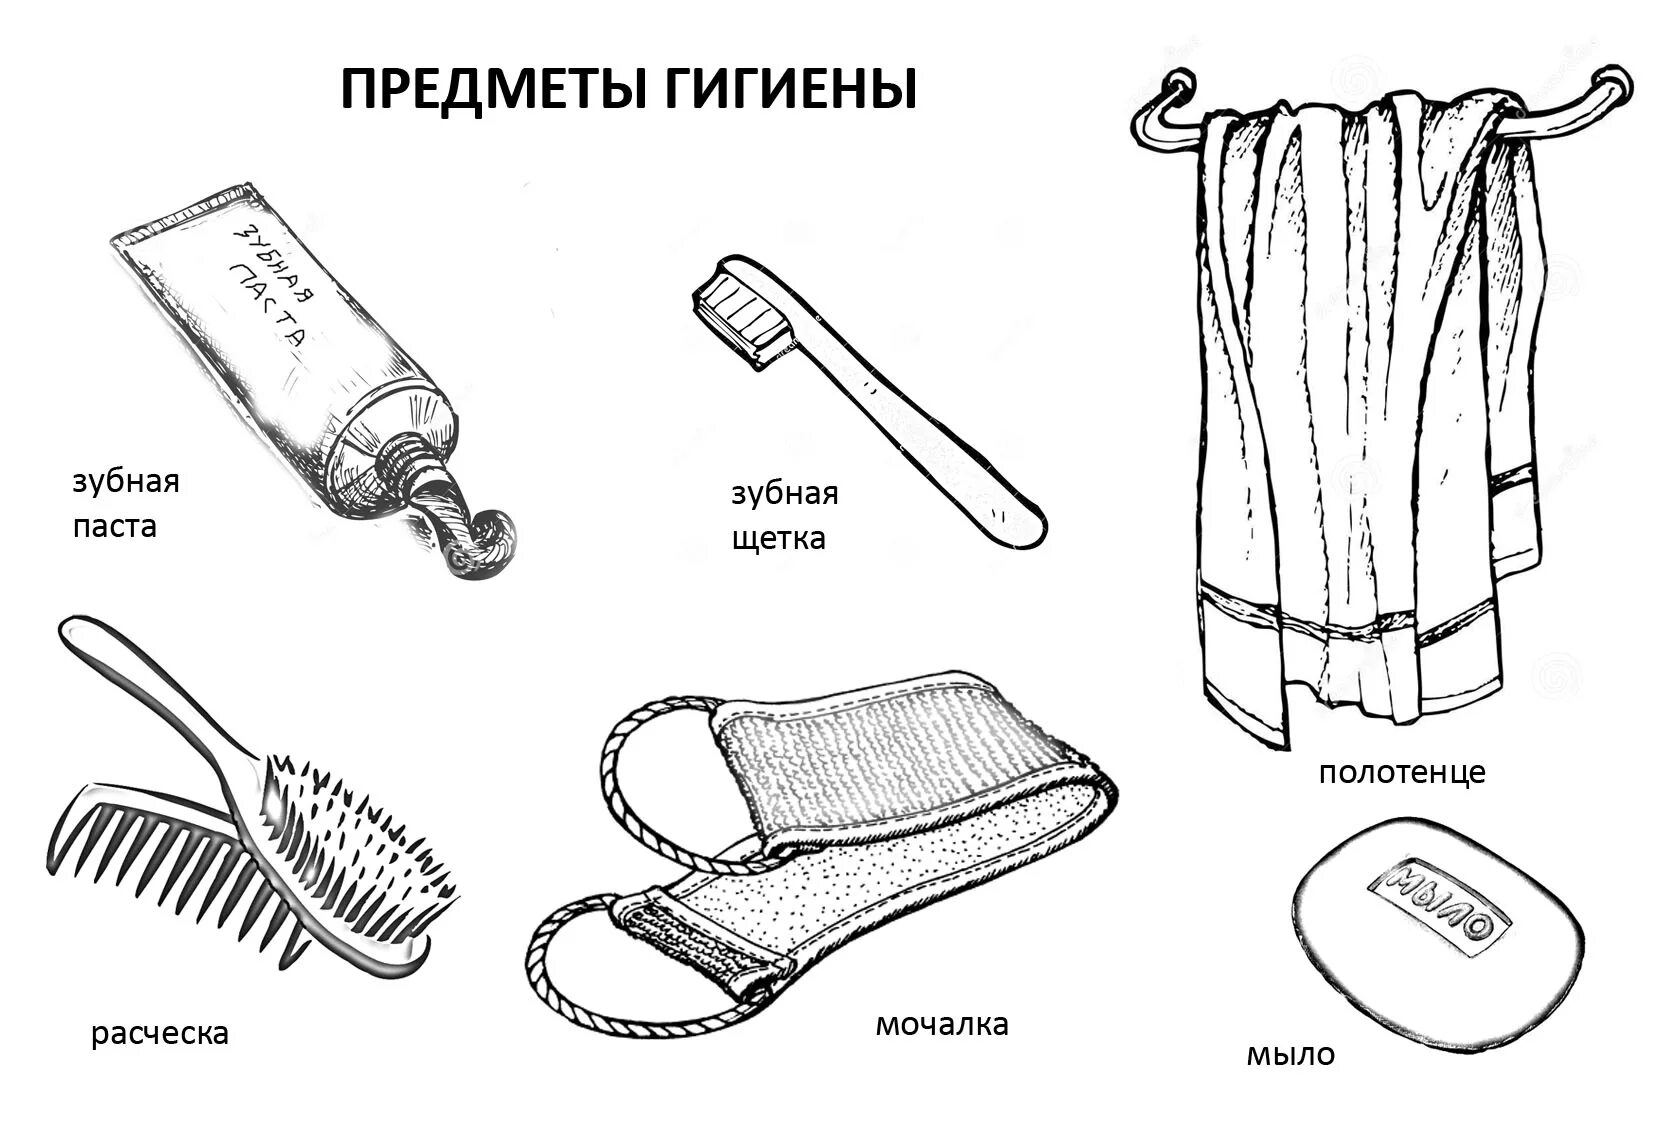 Hygiene items for children #9